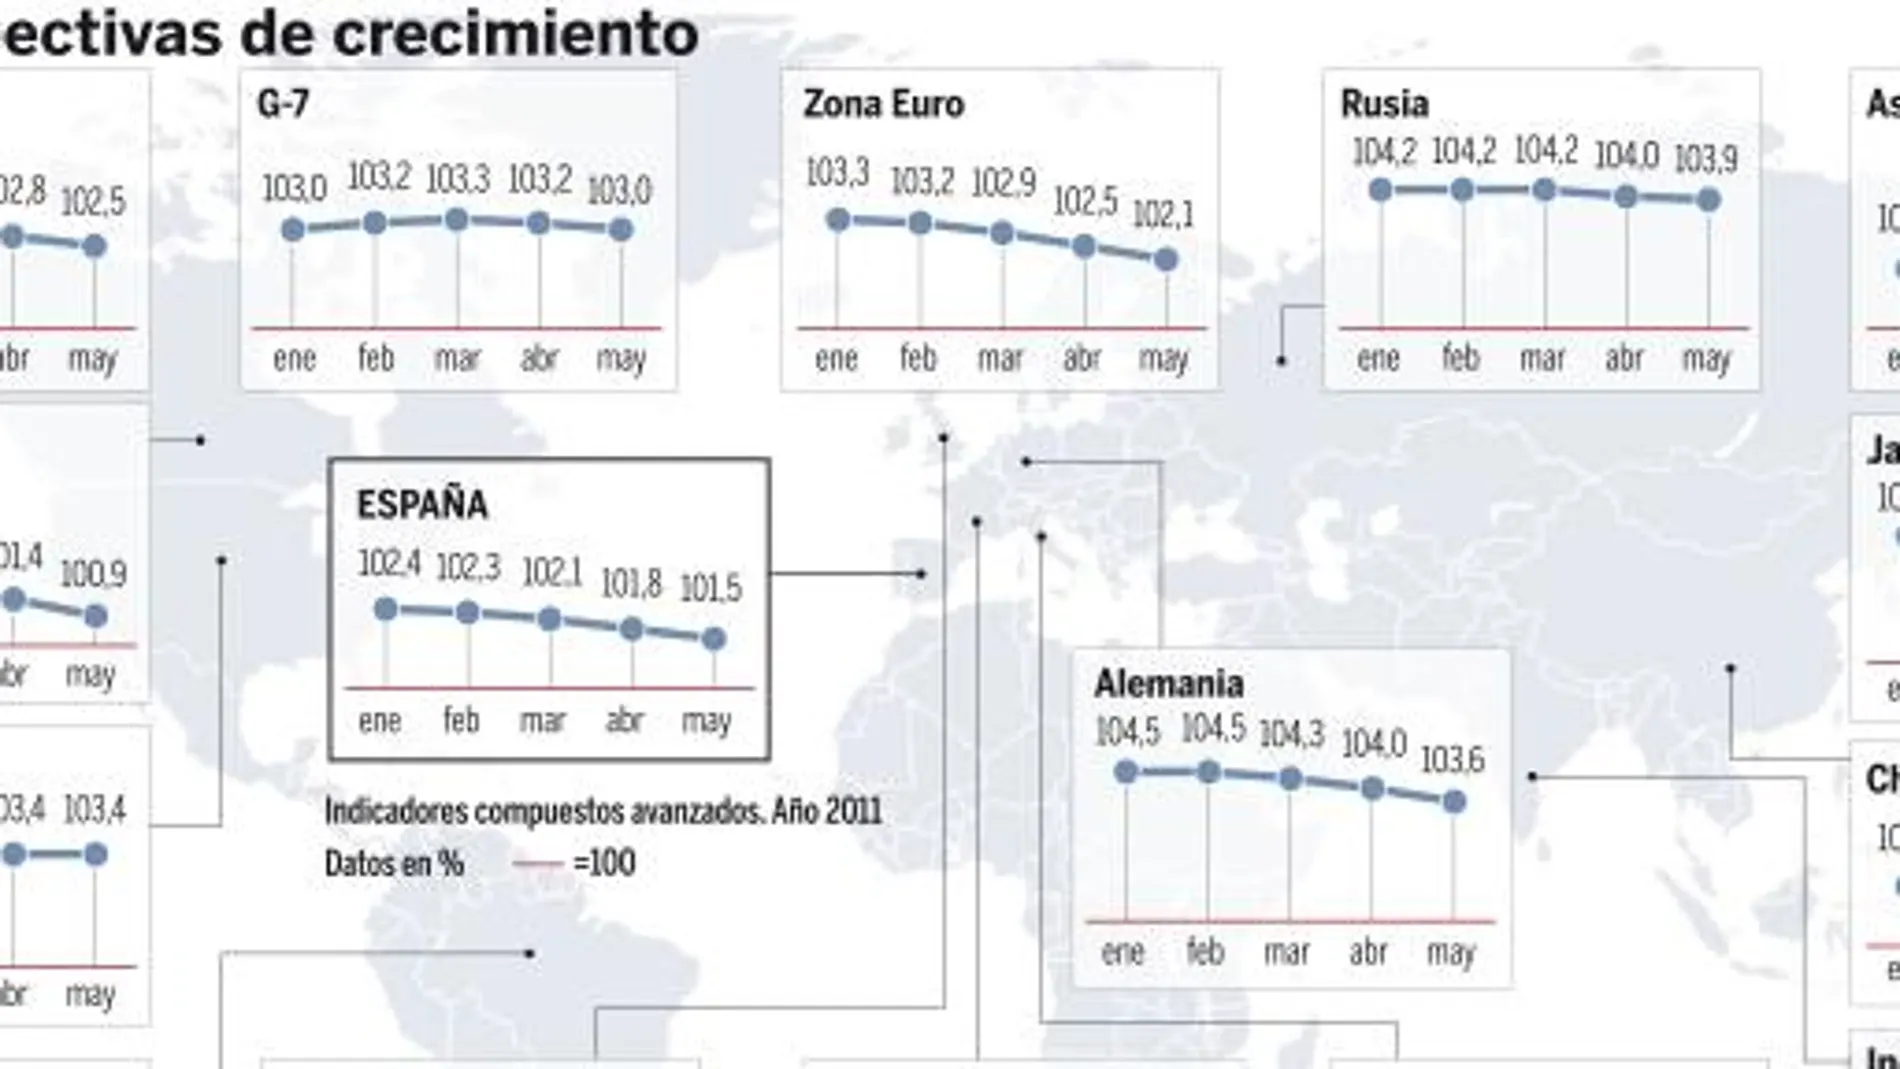 La OCDE incluye a España entre las economías más ralentizadas. Vea el gráfico completo en documentos adjuntos